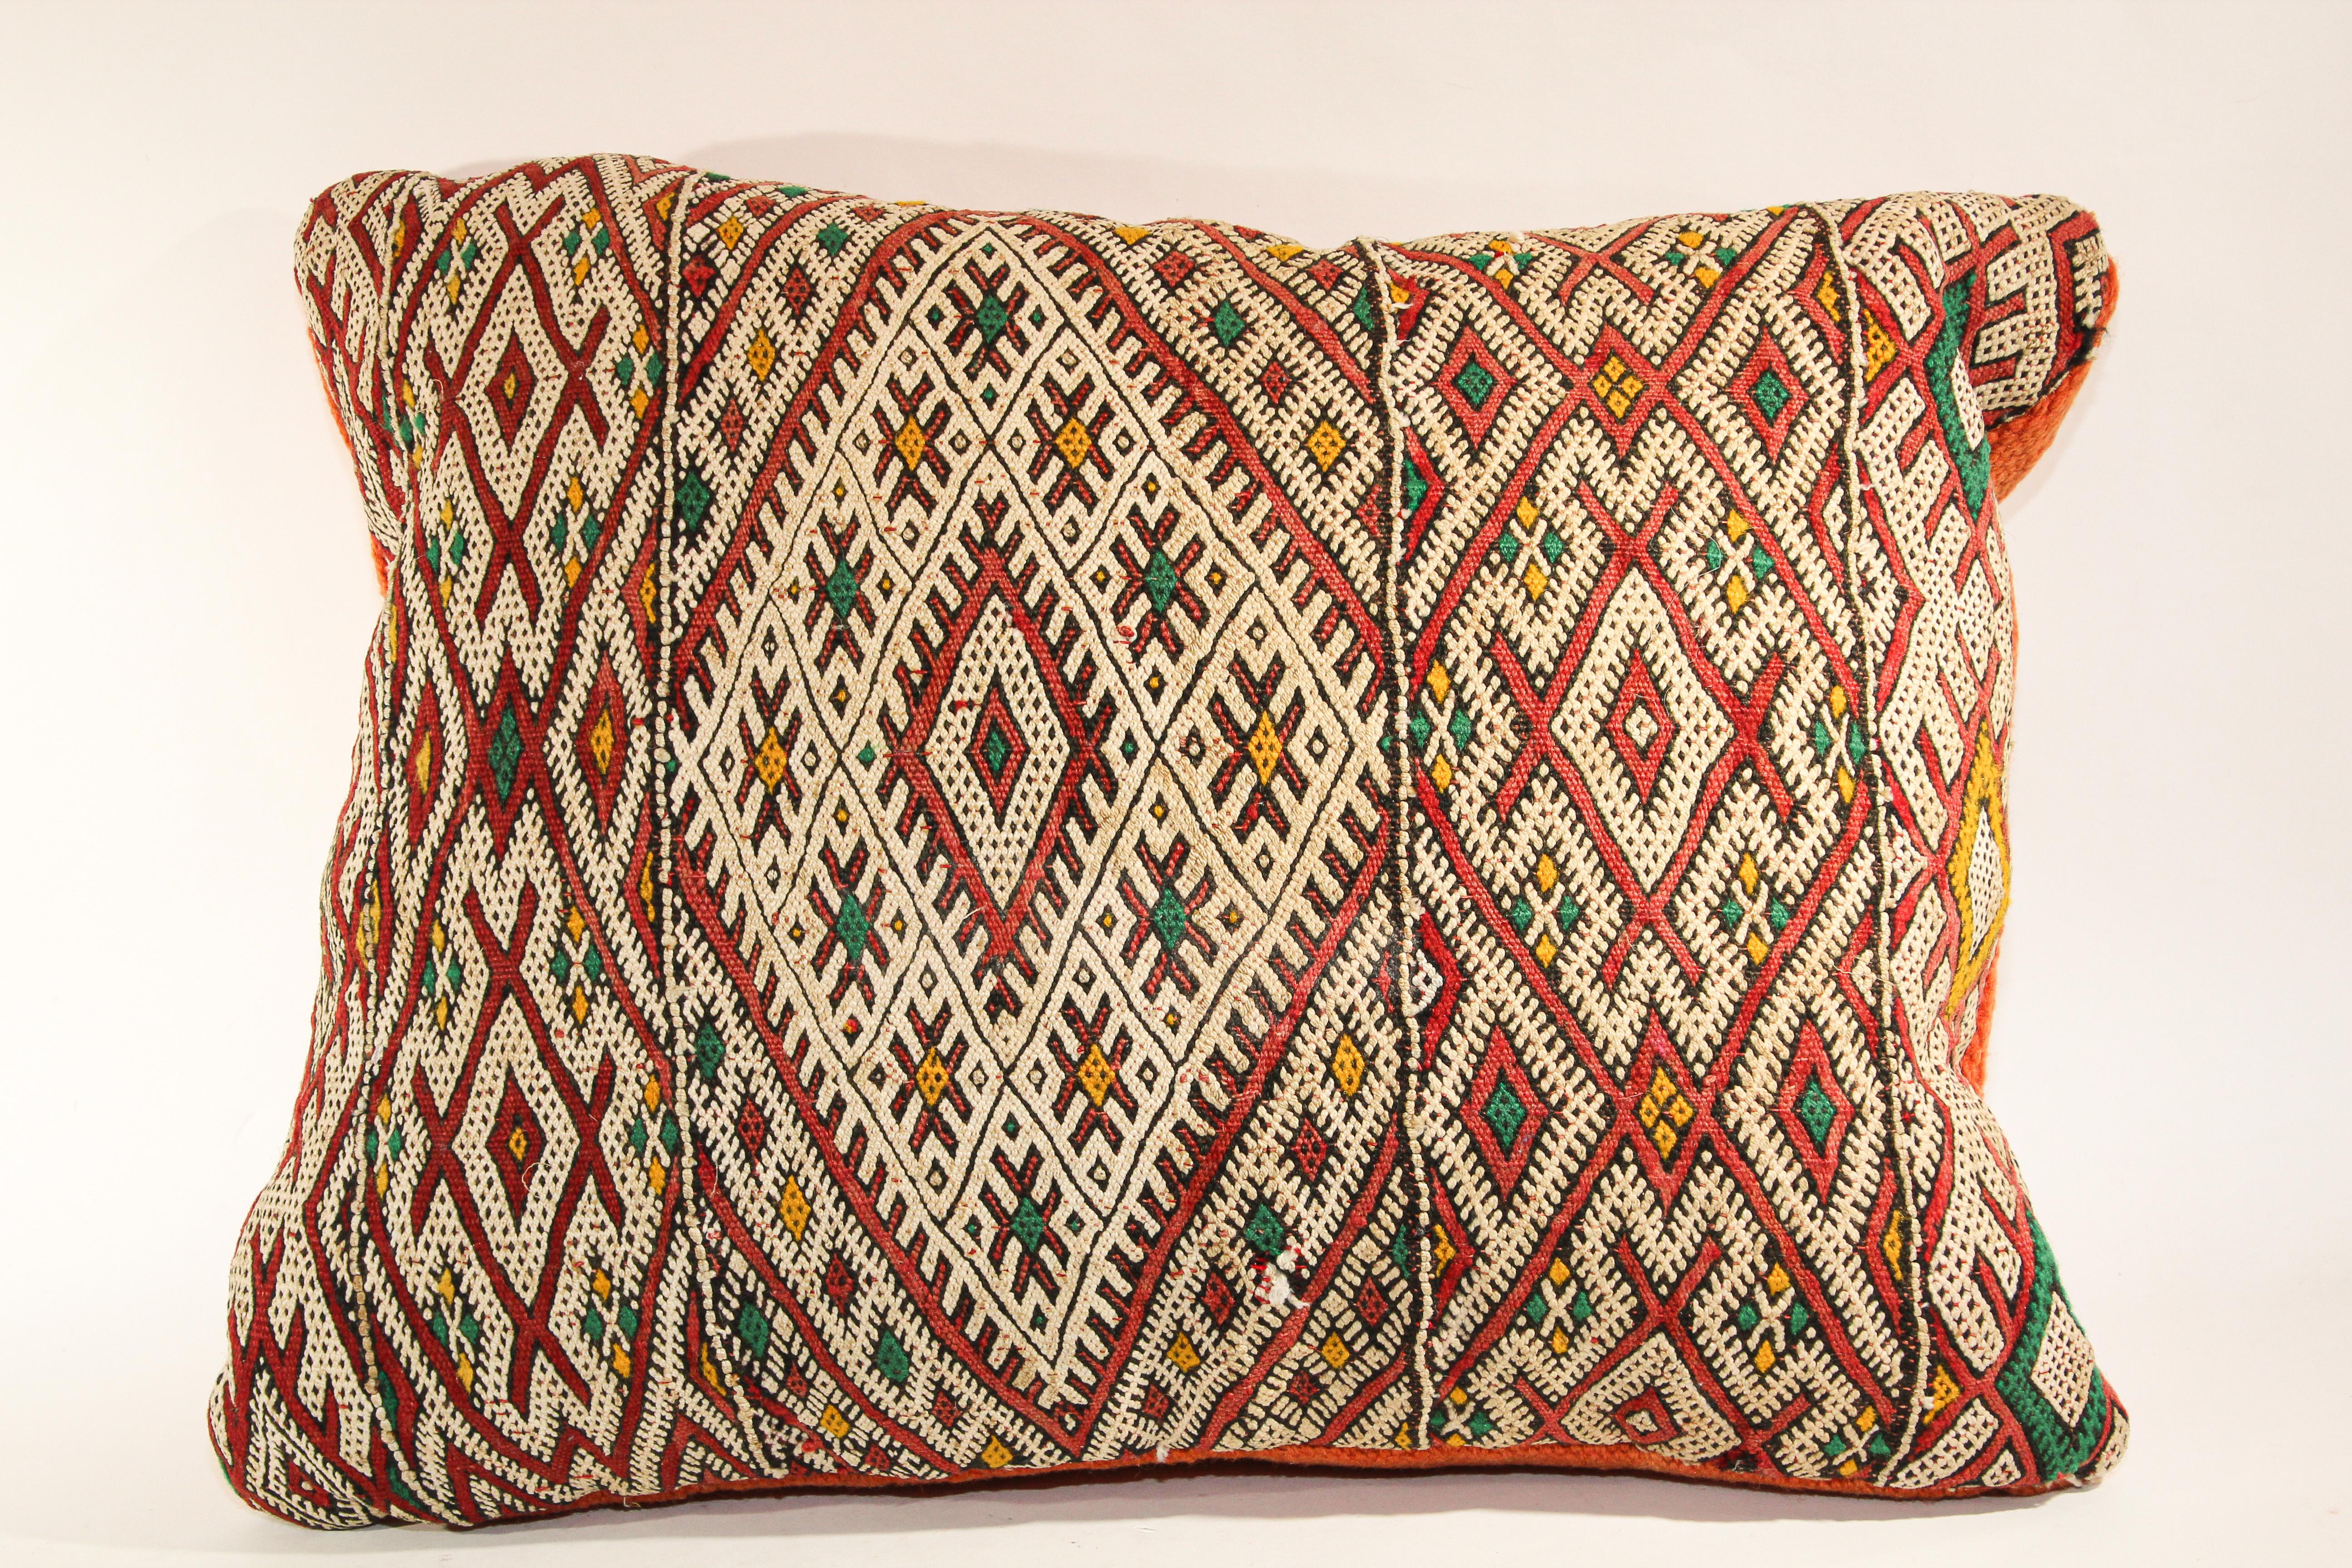 Coussin jetable ethnique marocain tissé à la main à partir d'un tapis vintage.
Le recto de ce coussin berbère et le verso sont fabriqués à partir d'un tapis différent, le recto est plus élaboré et le verso est plus simple.
Motifs géométriques